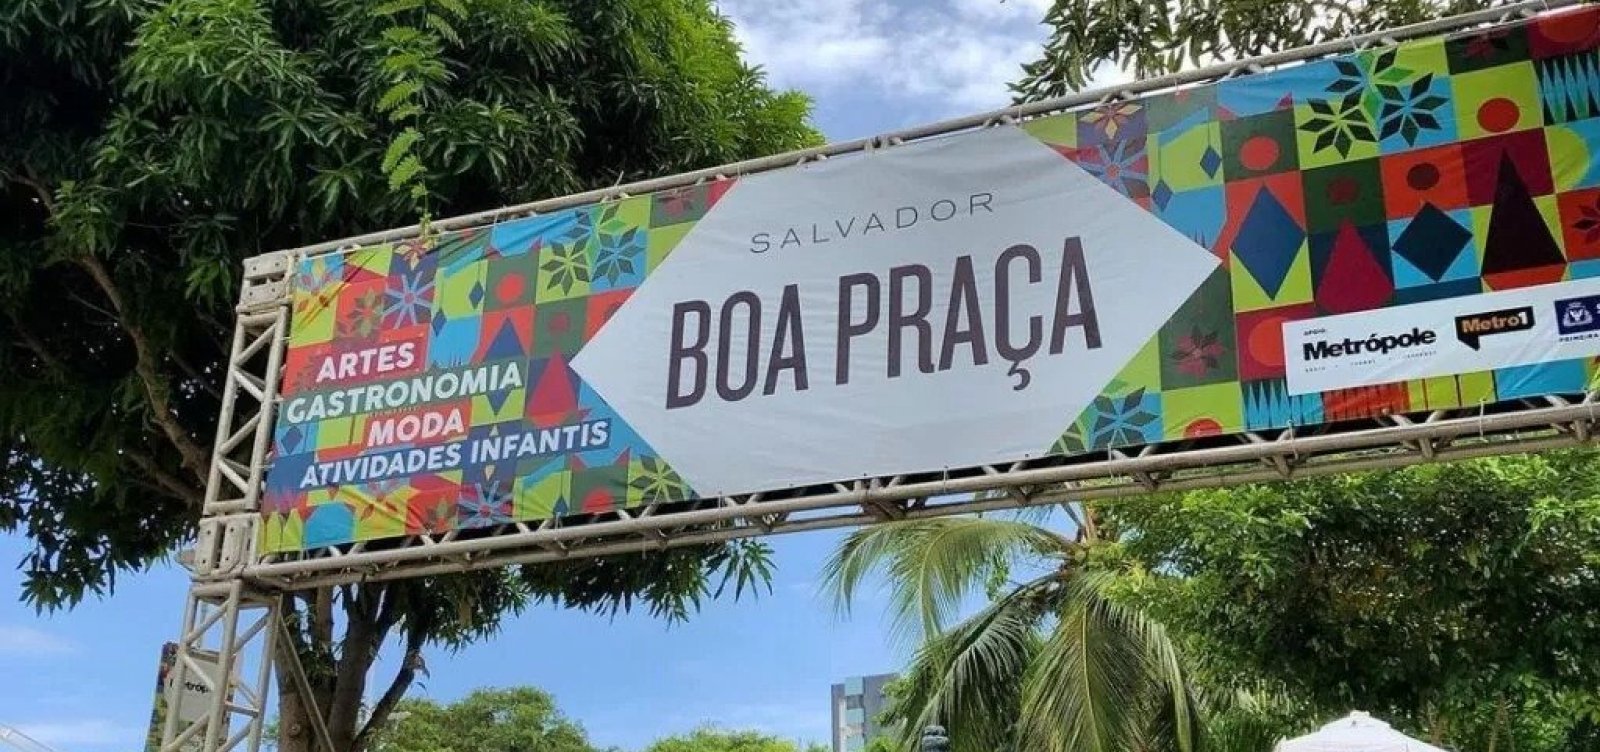 Com música, lazer e gastronomia, Salvador Boa Praça retorna às ruas neste final de semana 